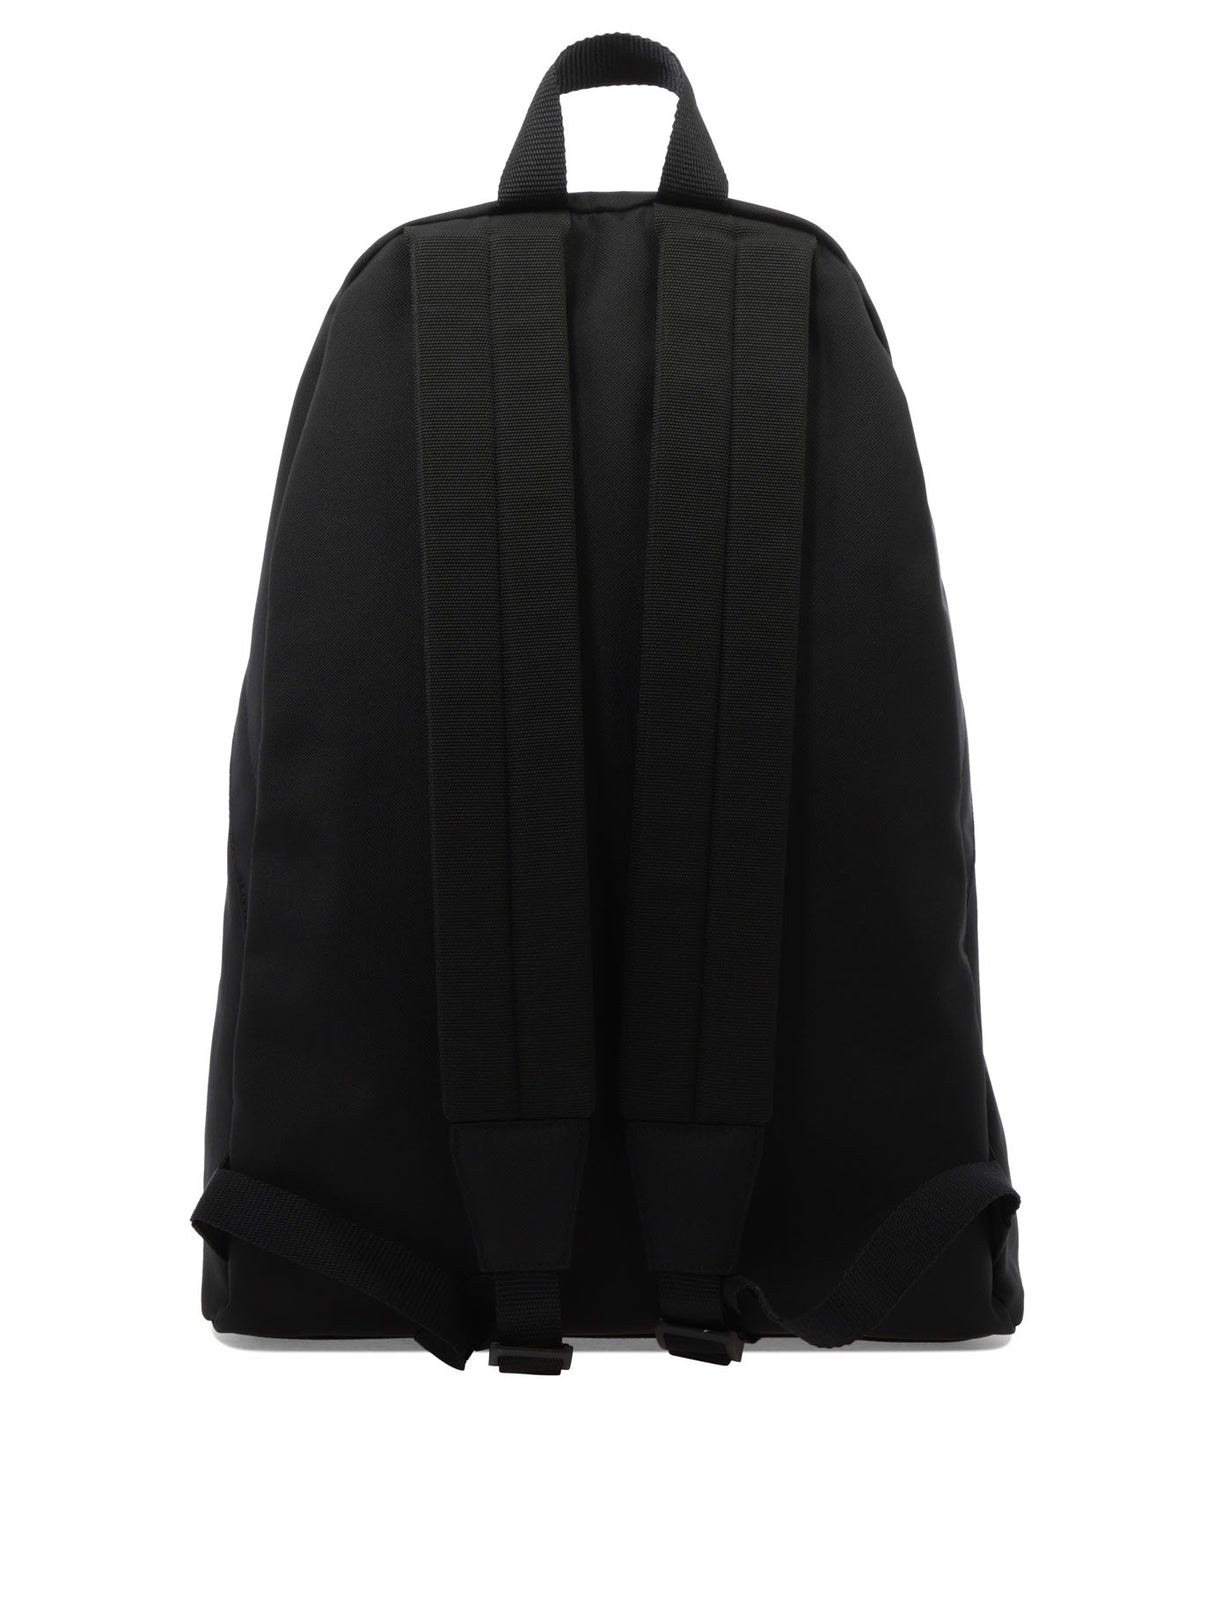 Ba lô Nylon đen với chi tiết logo Balenciaga cho phụ nữ - Mùa mang đi